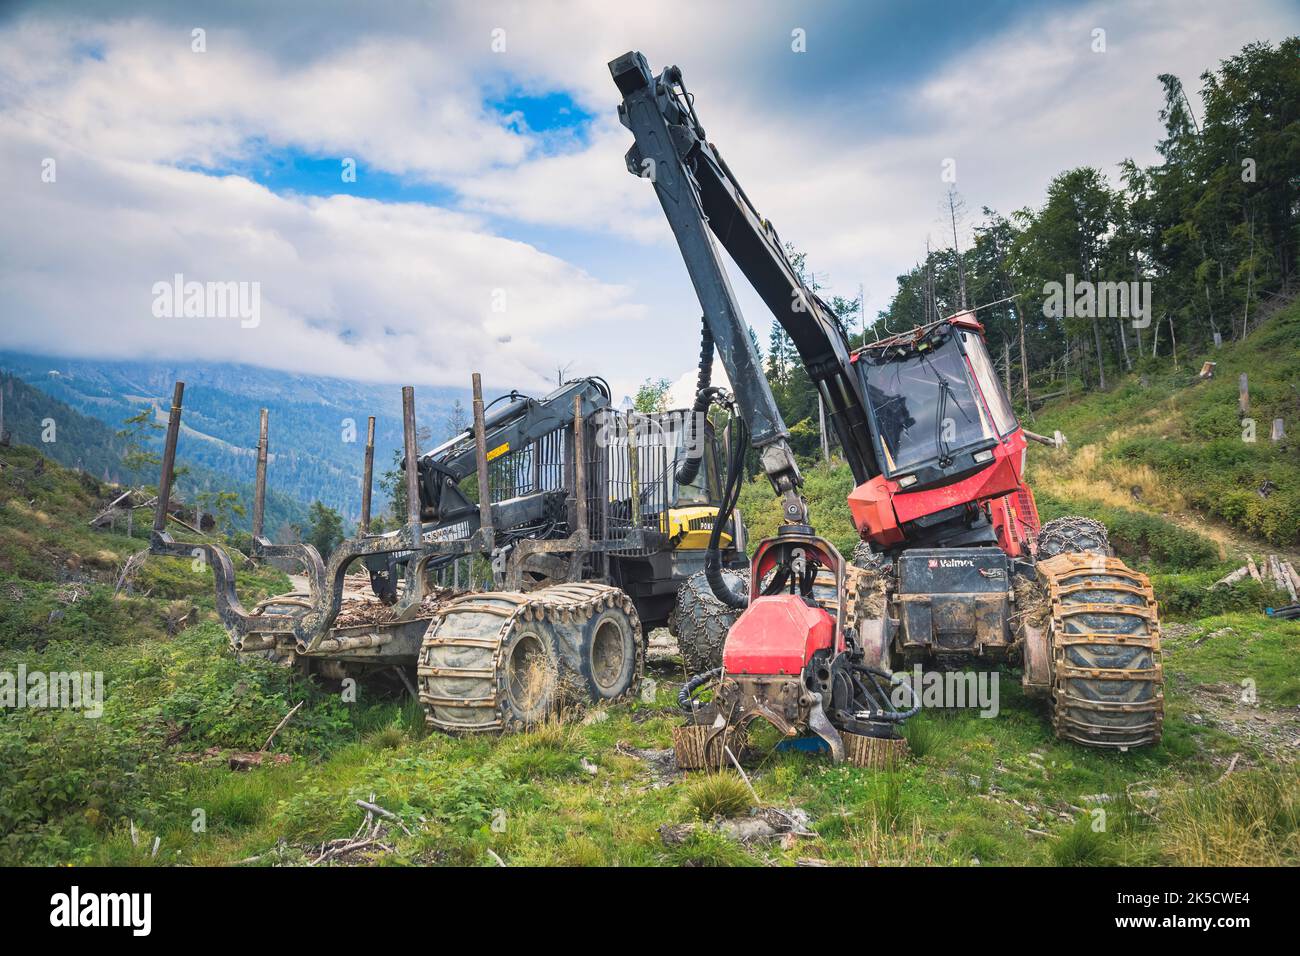 Italien, Venetien, Provinz Belluno, Dolomiten. Harvester und Forwarder Forstfahrzeug in einem Wald von dem Sturm Vaia getroffen Stockfoto